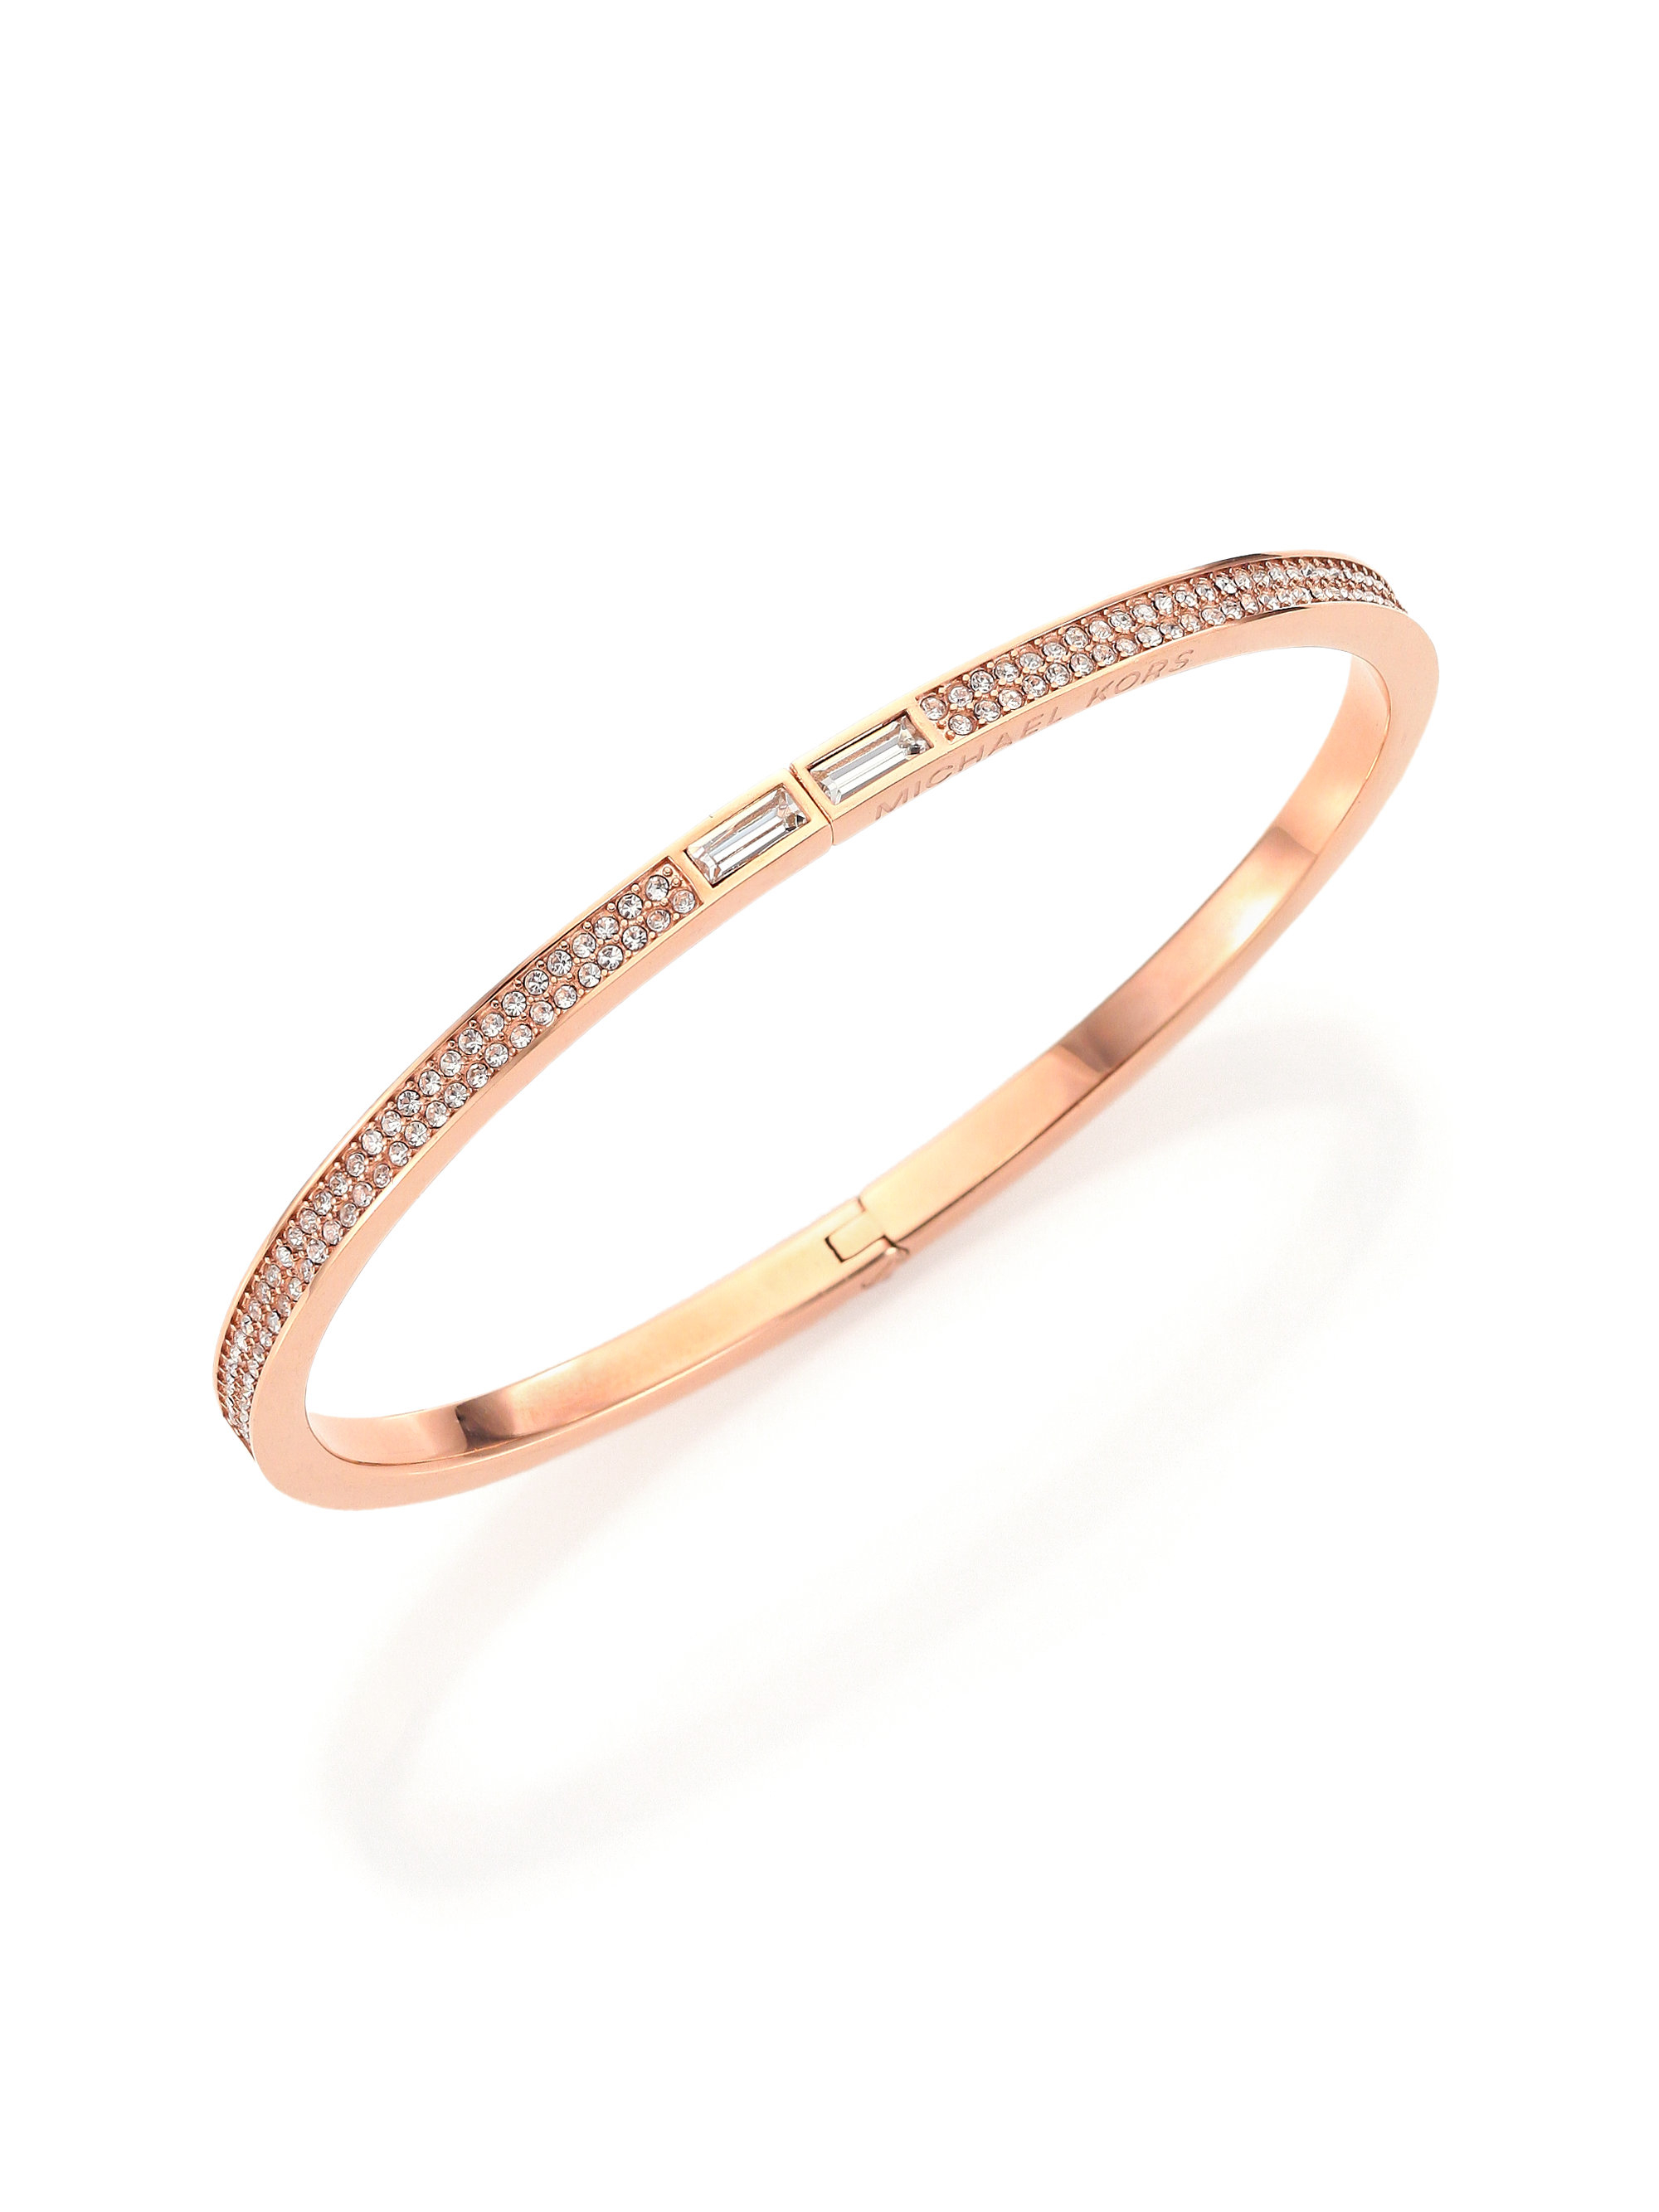 Michael Kors Park Avenue Pave Bracelet in Rose Gold (Pink) - Lyst